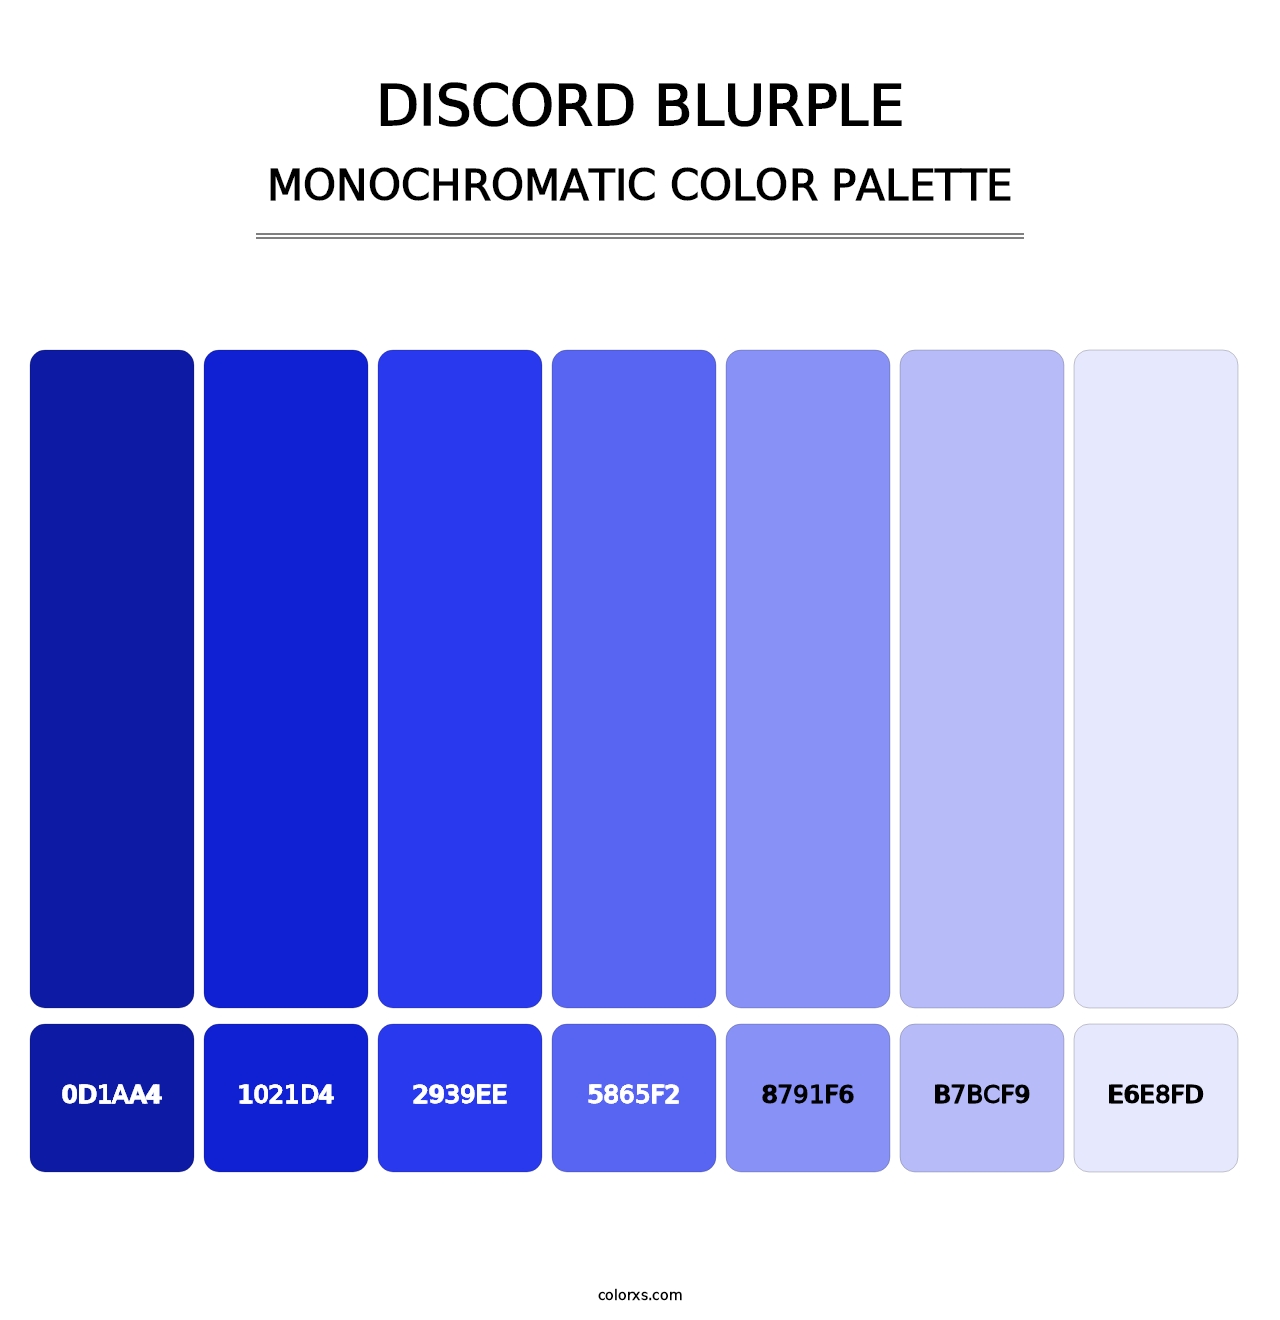 Discord Blurple - Monochromatic Color Palette